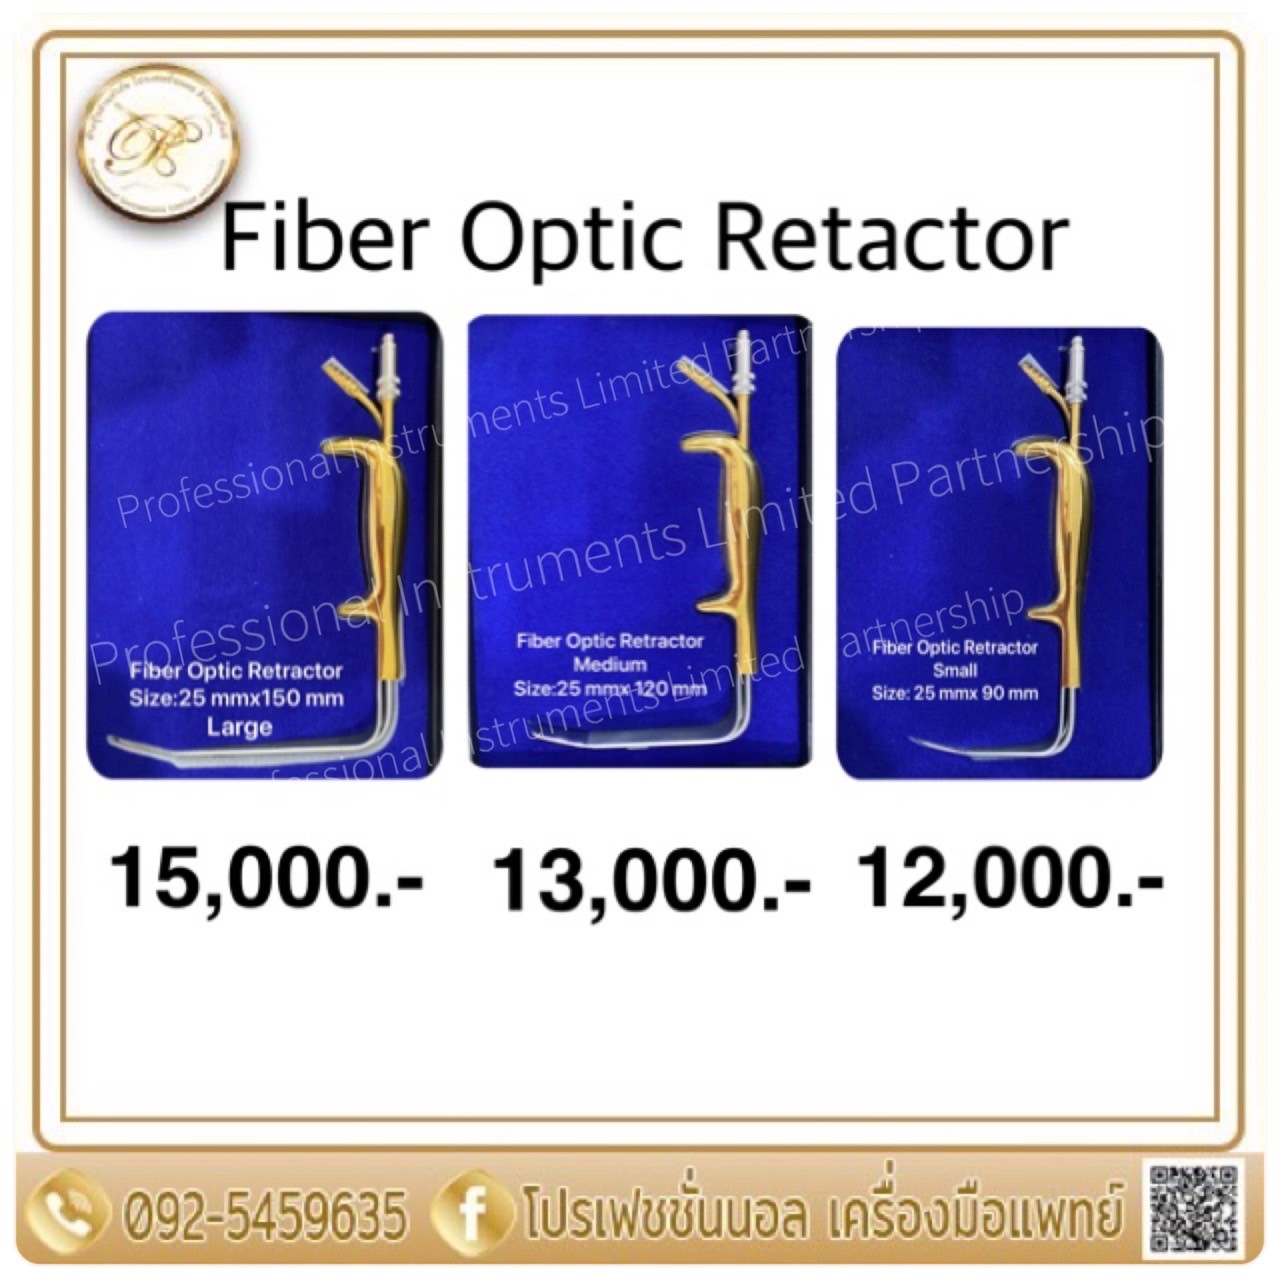 Fiber Optic Retractor